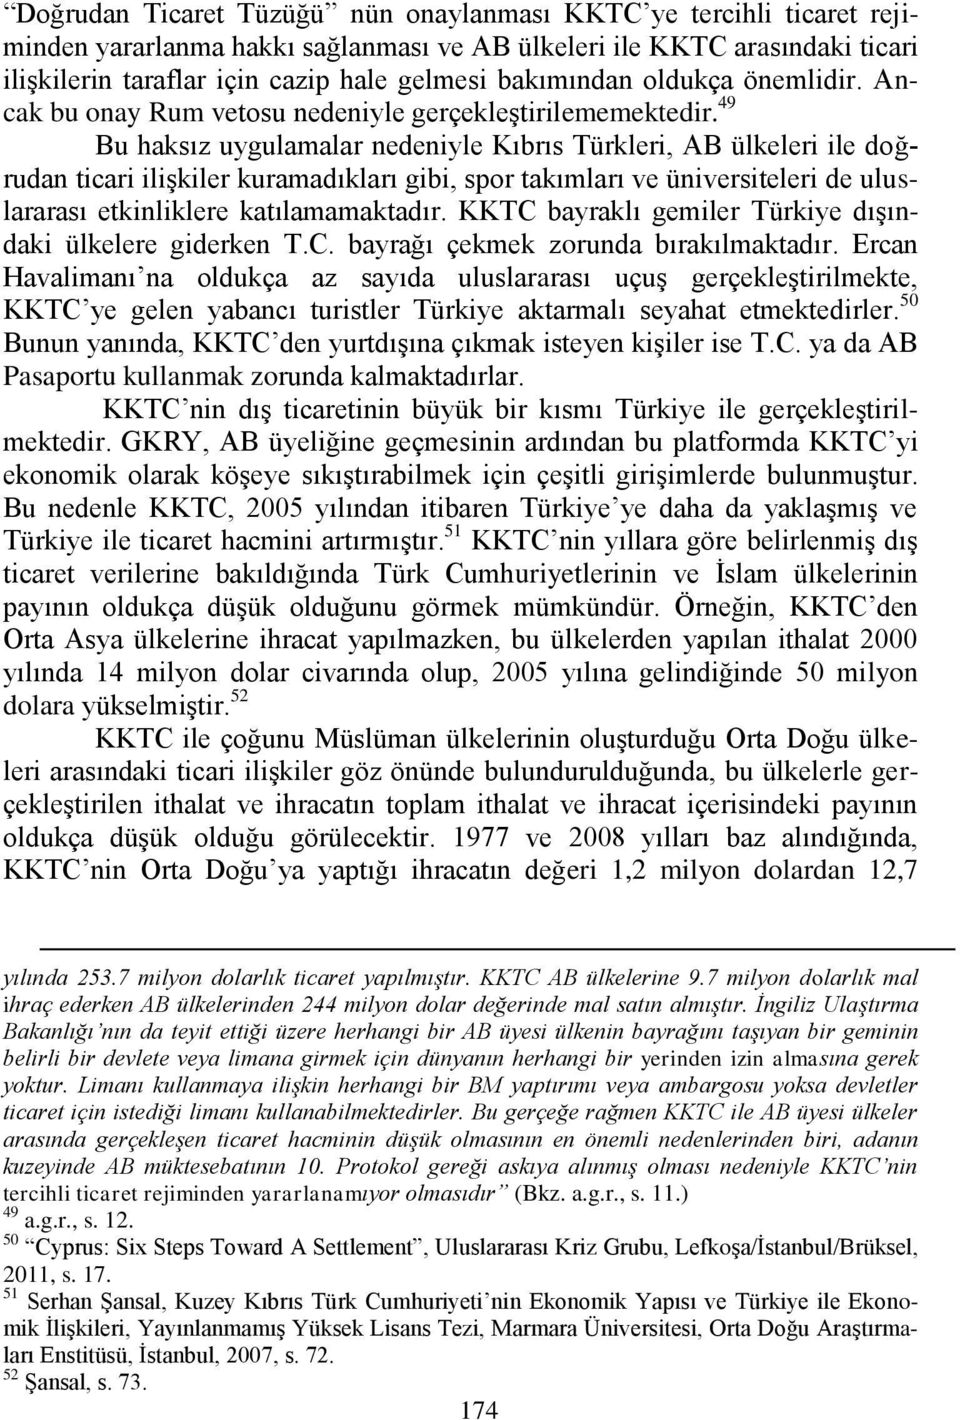 49 Bu haksız uygulamalar nedeniyle Kıbrıs Türkleri, AB ülkeleri ile doğrudan ticari iliģkiler kuramadıkları gibi, spor takımları ve üniversiteleri de uluslararası etkinliklere katılamamaktadır.